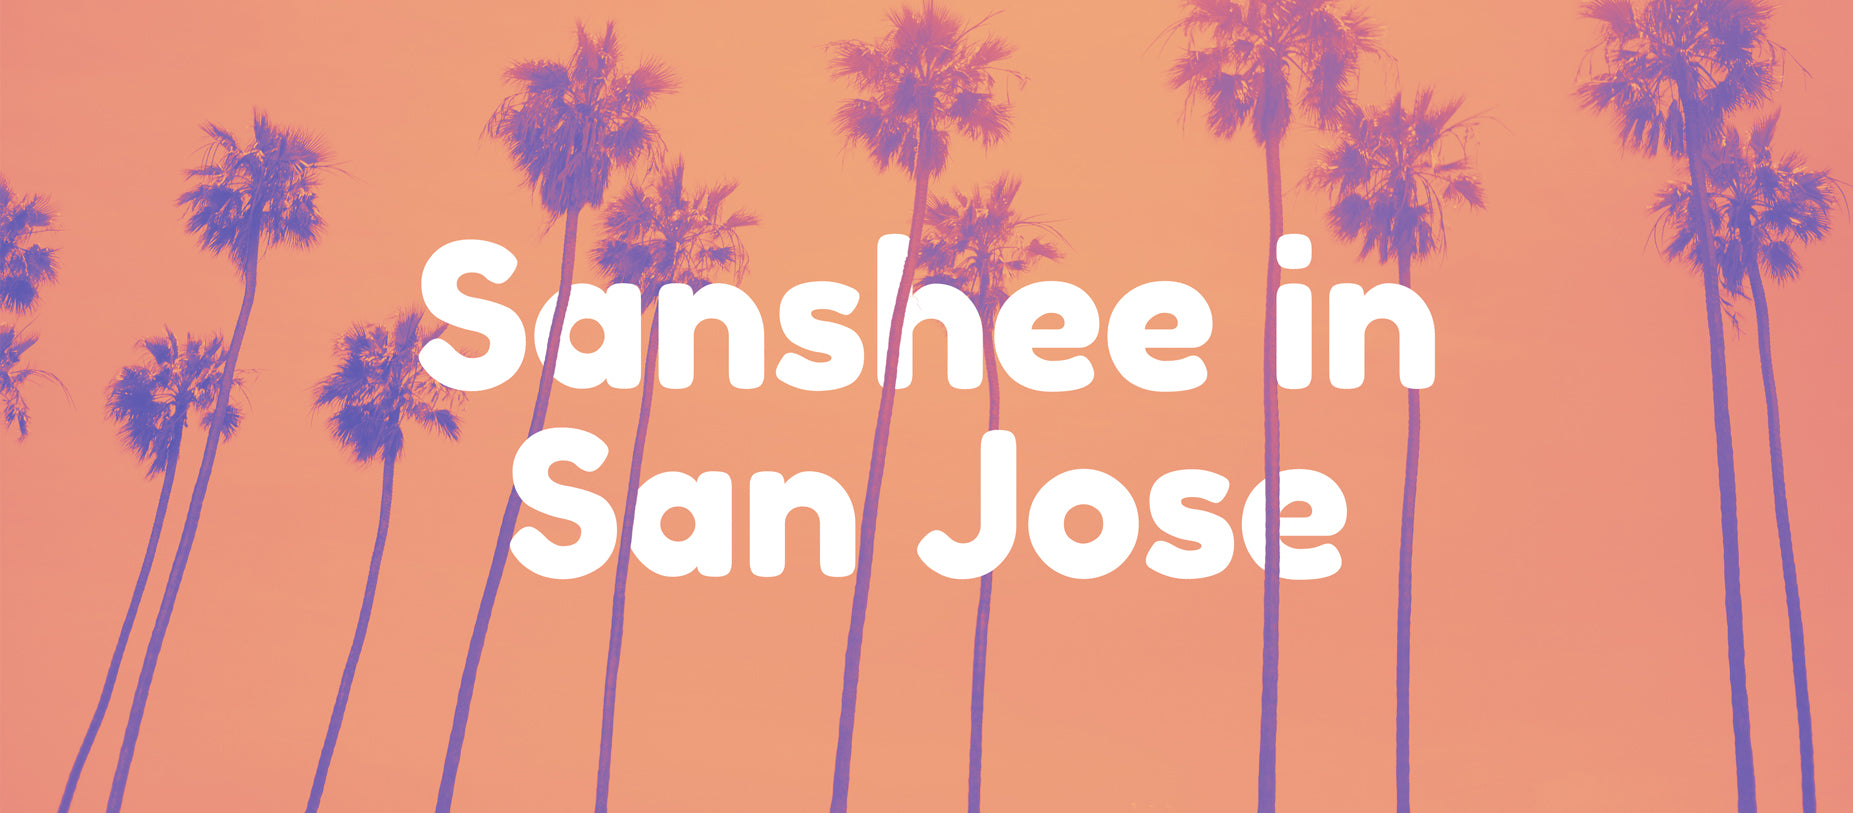 Sanshee in San Jose